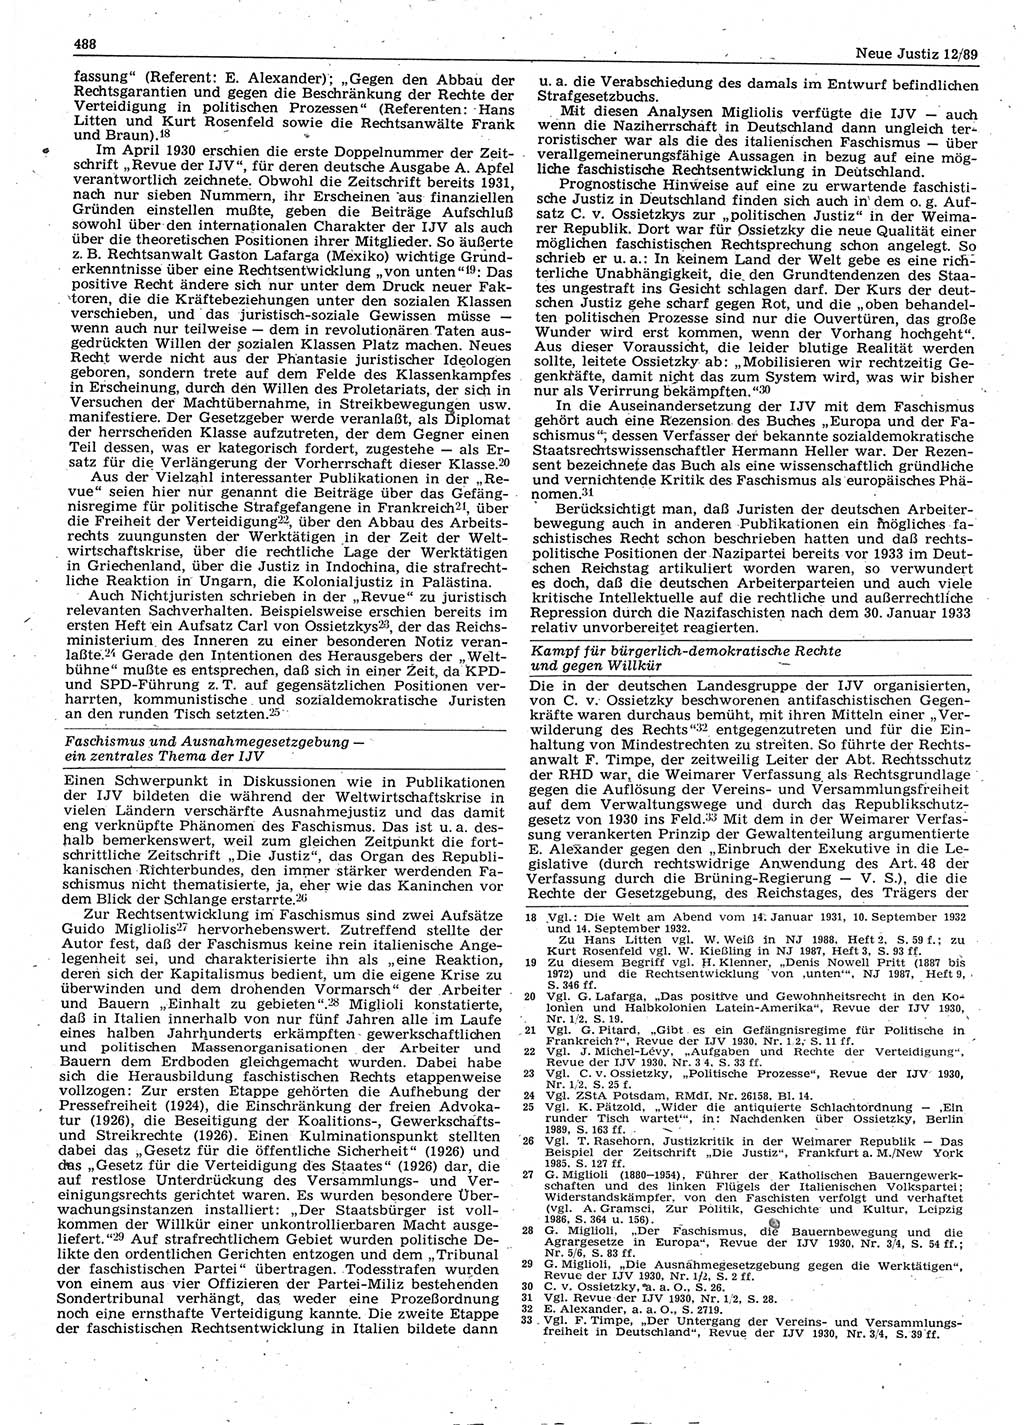 Neue Justiz (NJ), Zeitschrift für sozialistisches Recht und Gesetzlichkeit [Deutsche Demokratische Republik (DDR)], 43. Jahrgang 1989, Seite 488 (NJ DDR 1989, S. 488)